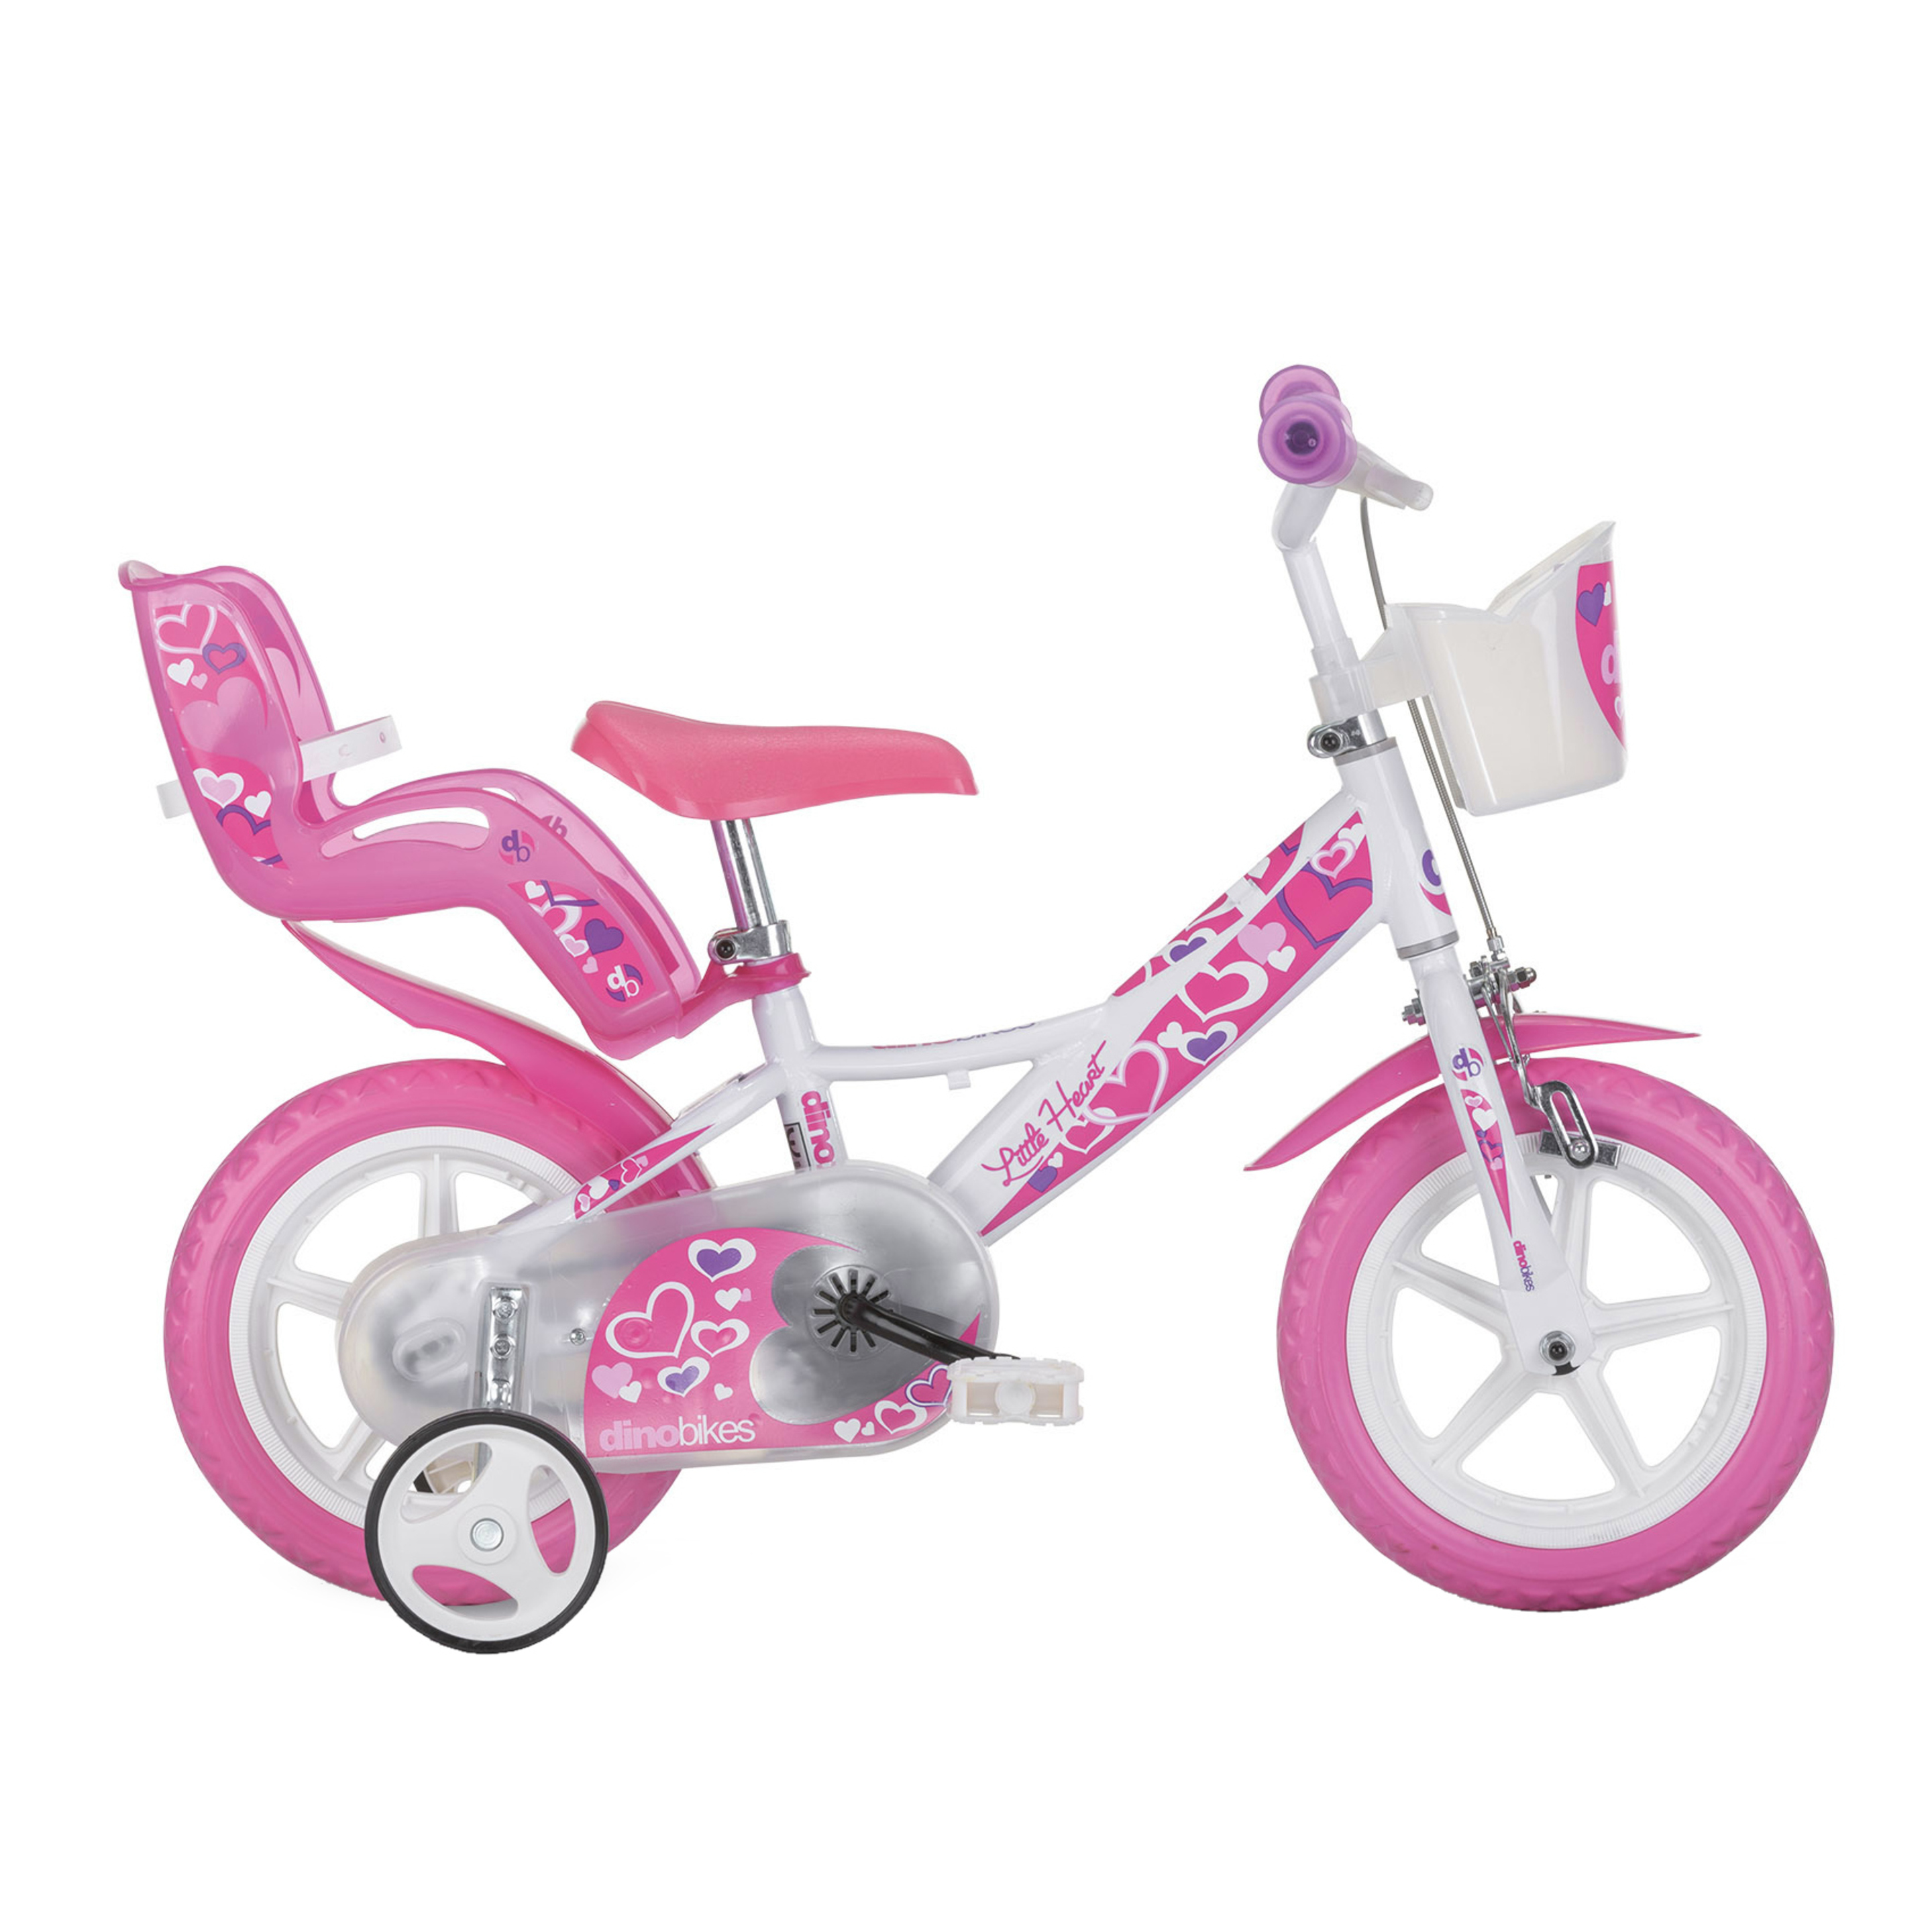 Bicicleta Infantil Hearts 12 Pulgadas 3-5 Años - blanco - 